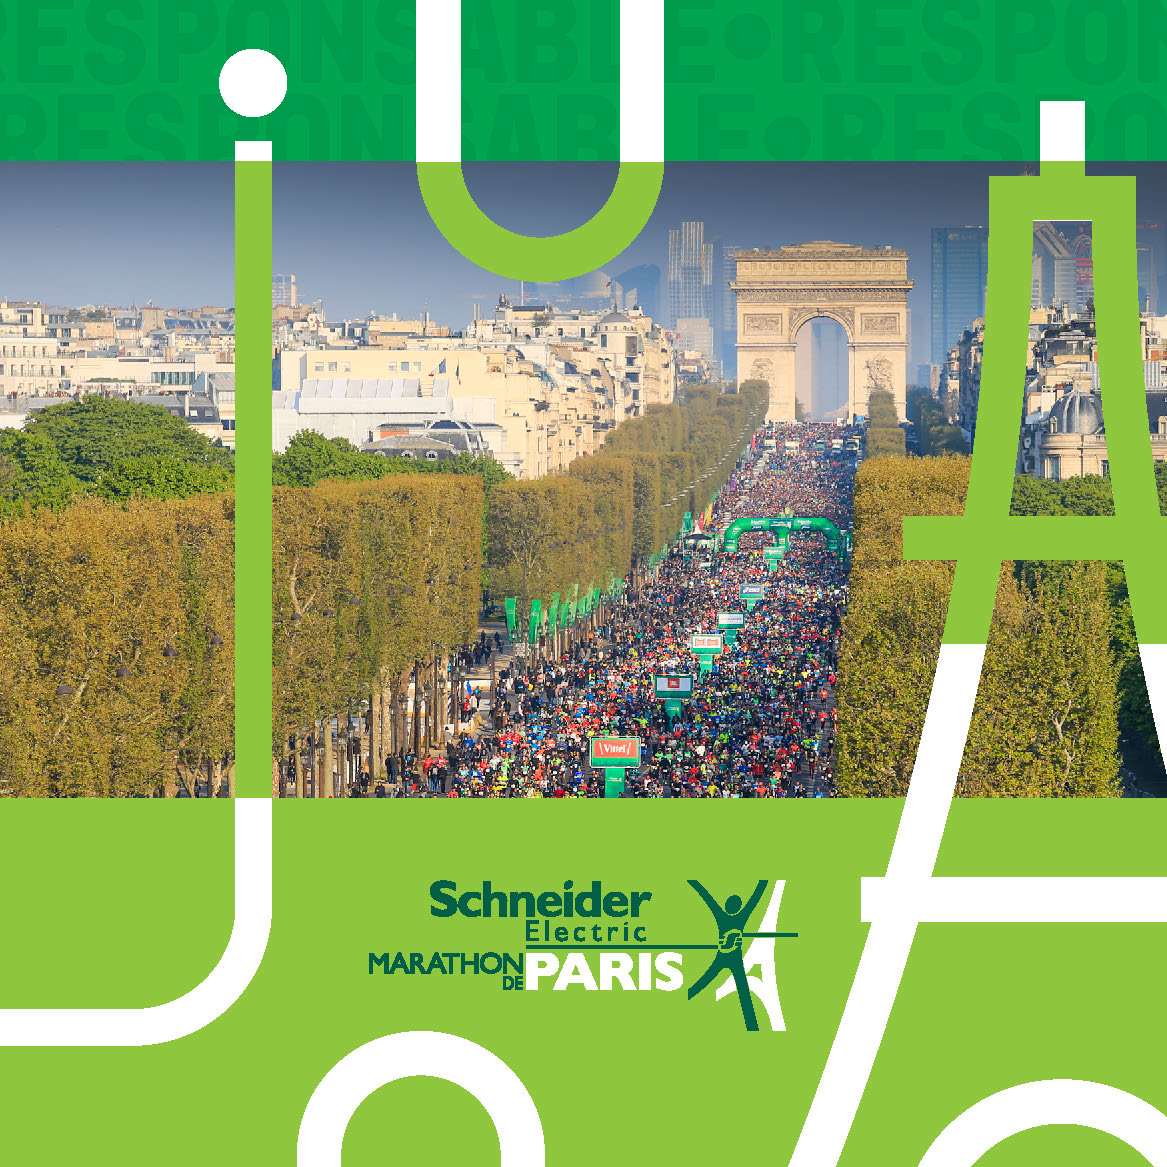 Schneider Elecric Marathon de Paris